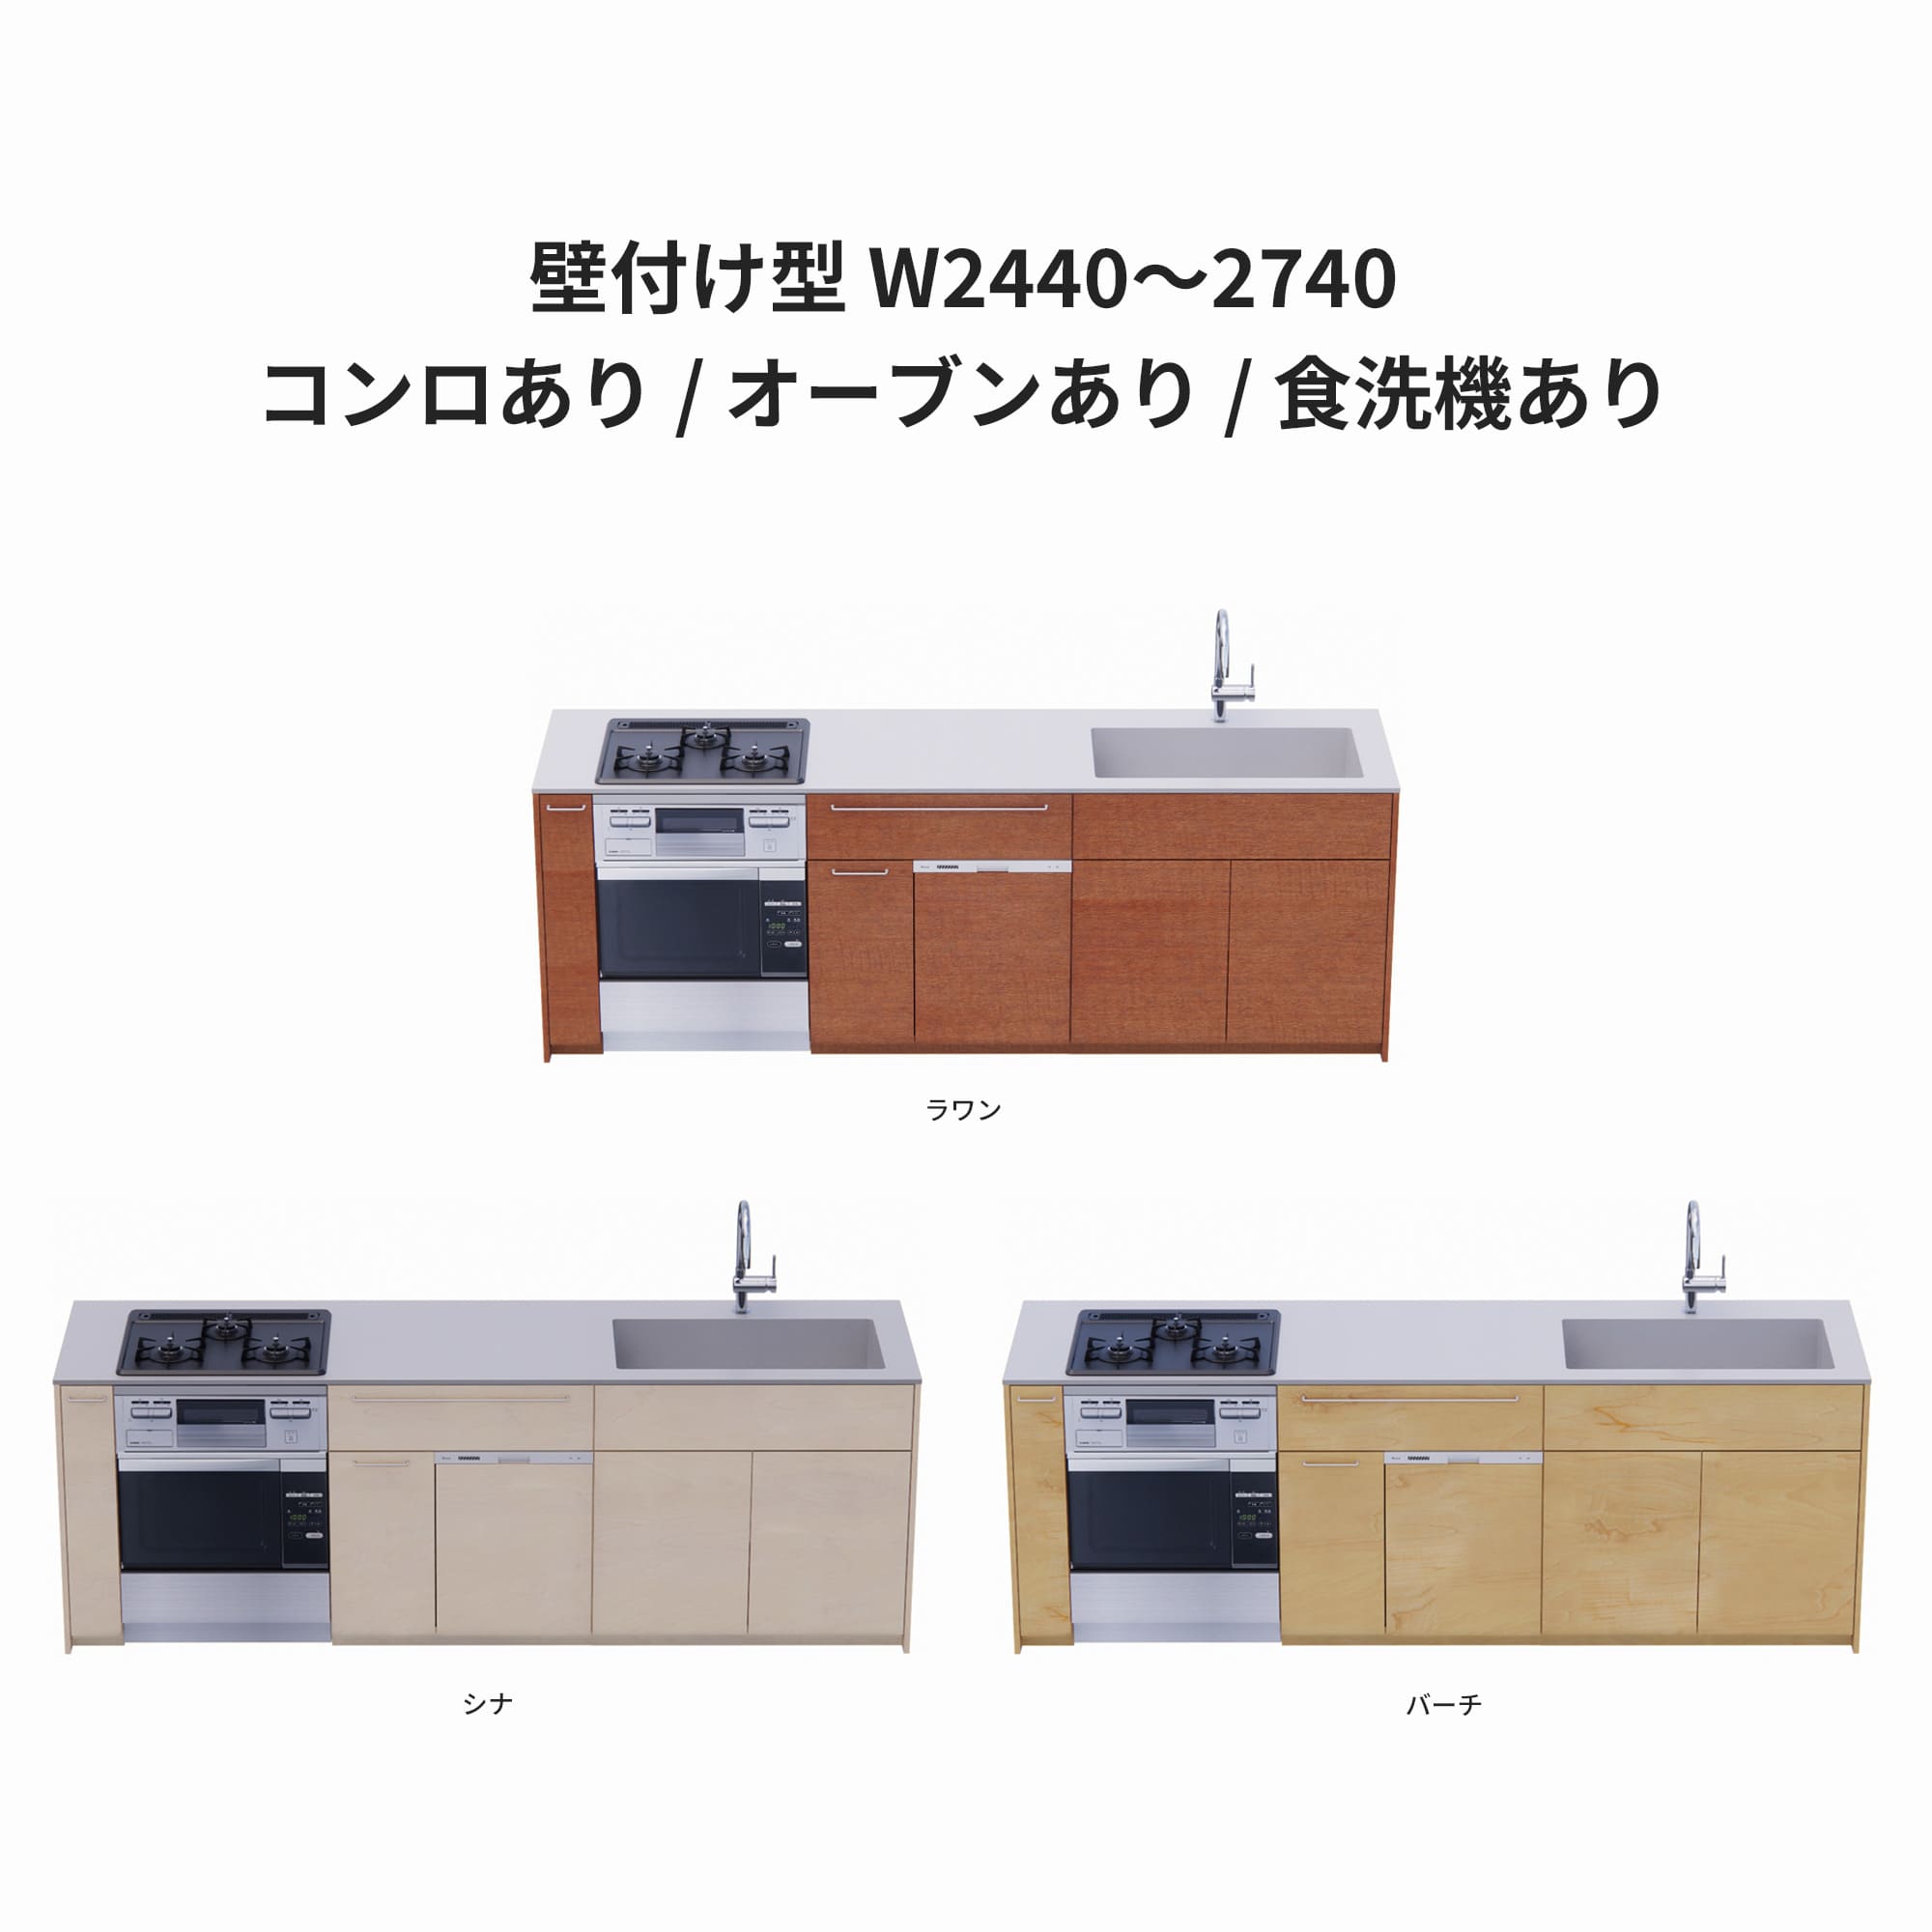 木製システムキッチン 壁付け型 W2440～2740・コンロあり / オーブンあり / 食洗機あり KB-KC022-28-G183 ラワン・シナ・バーチが選択できます